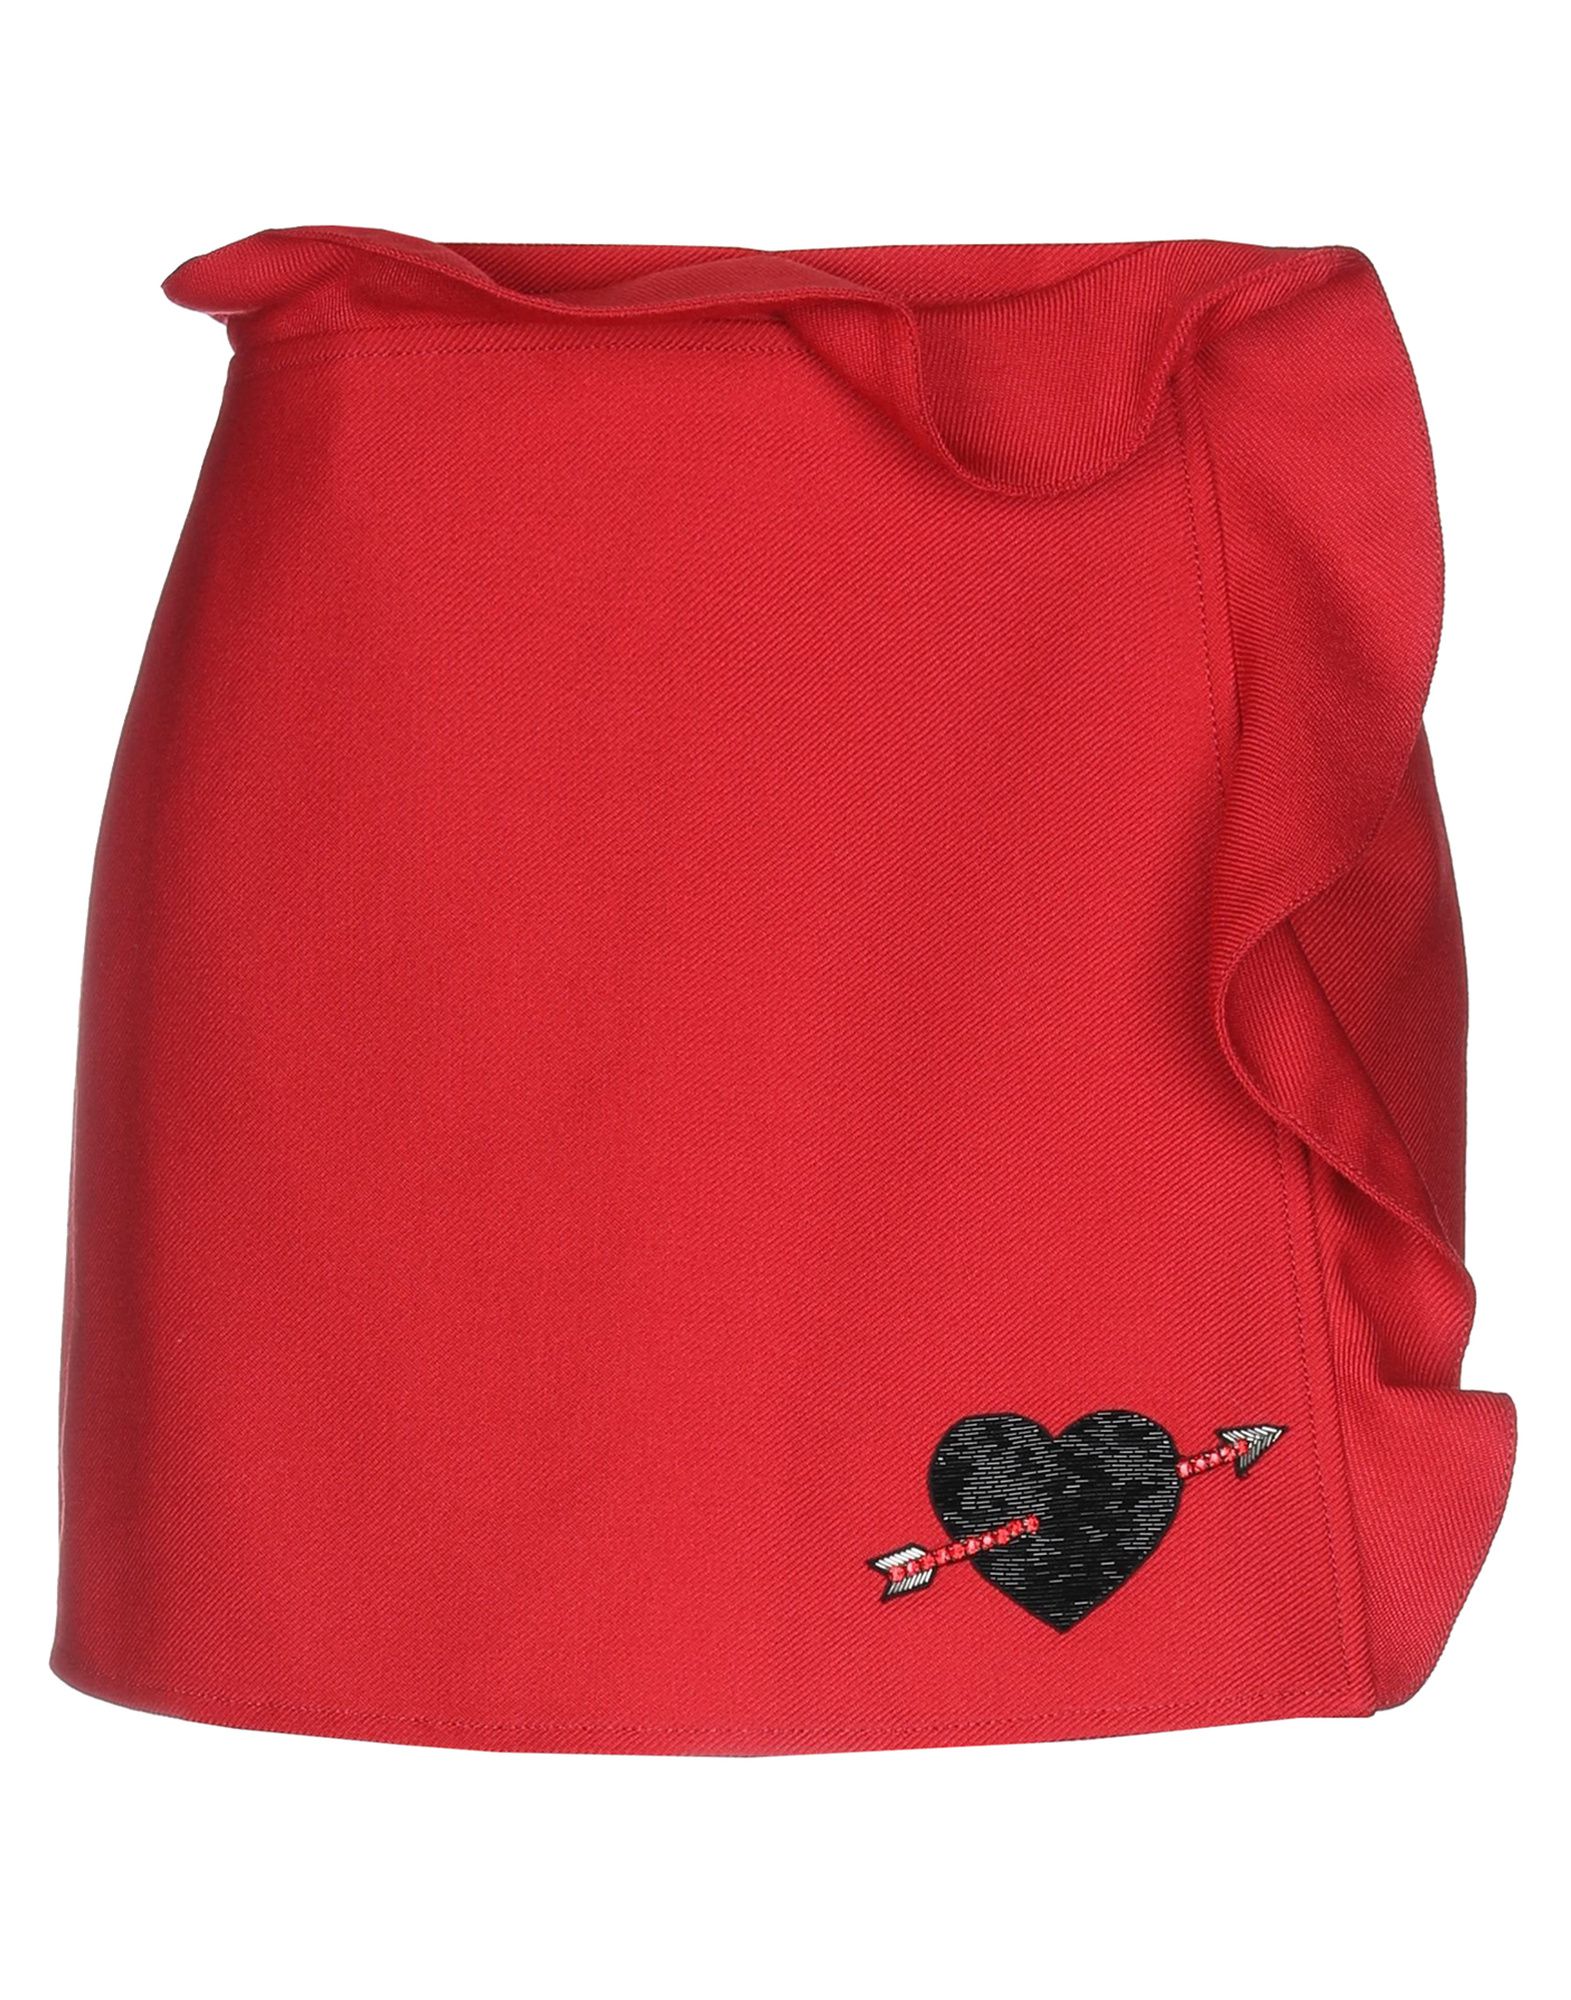 Мини-юбка  - Красный,Черный цвет